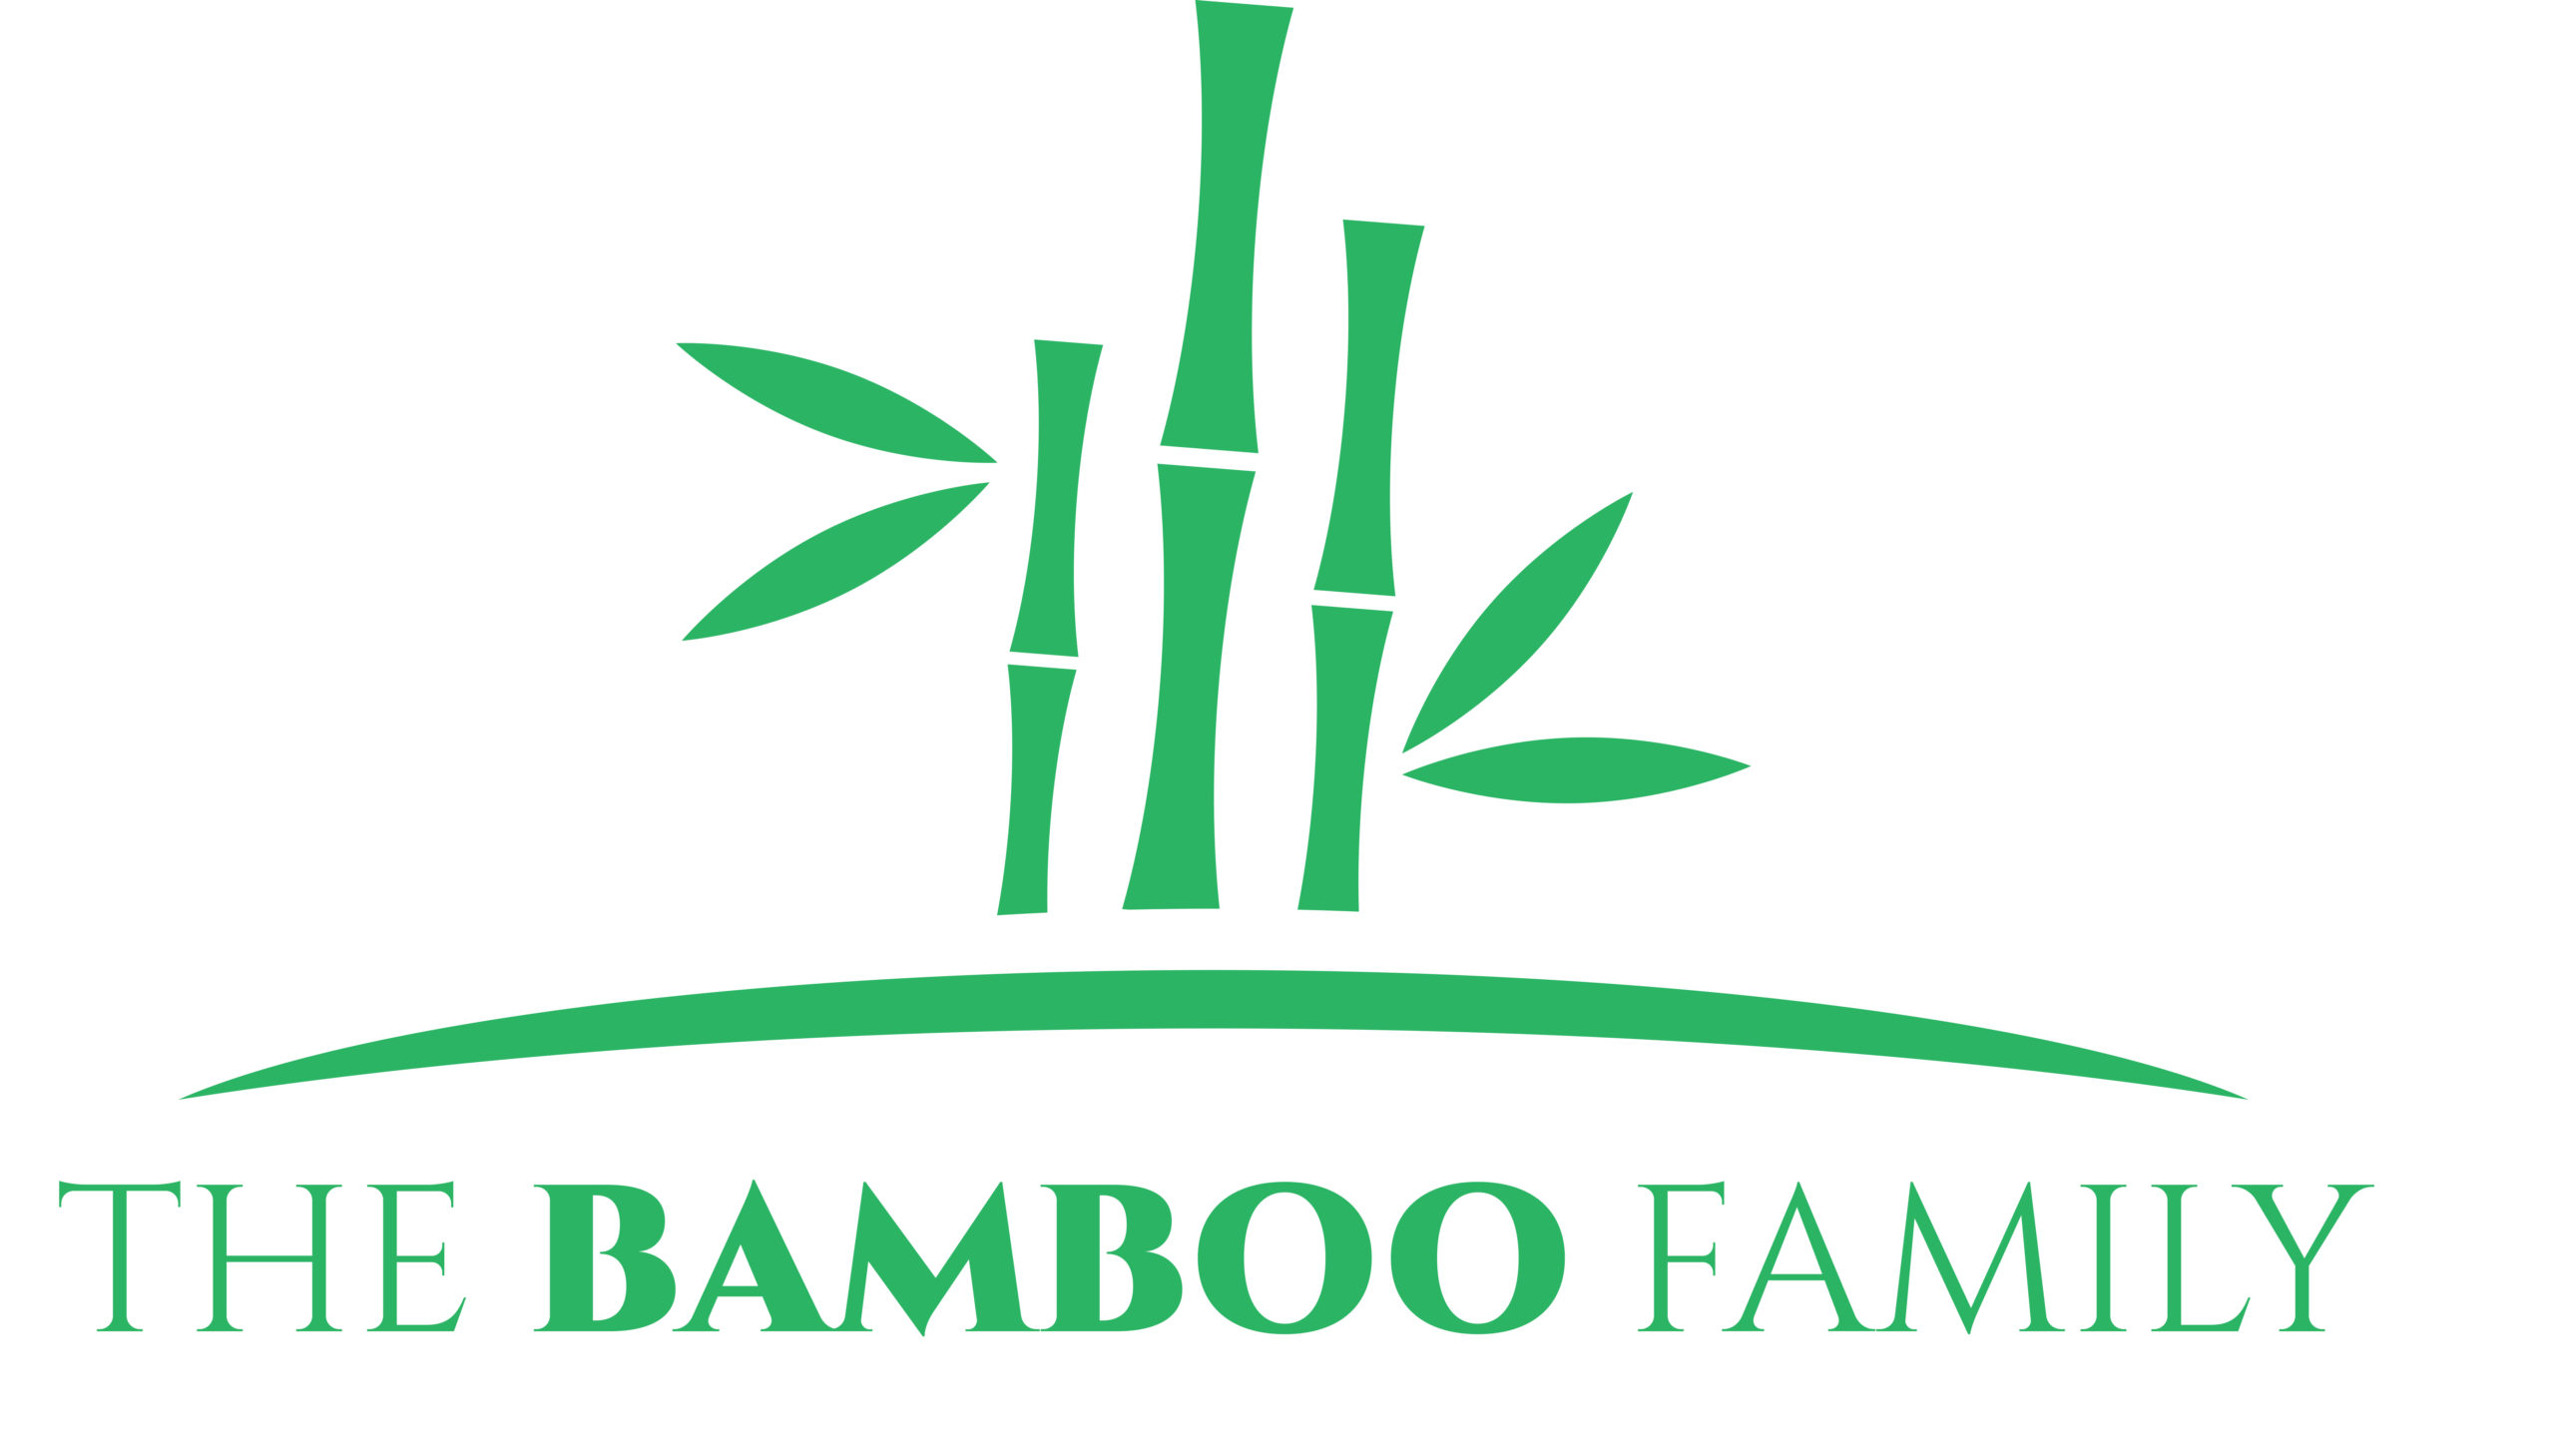 BabyBamboo - Facilitez la vie des parents !